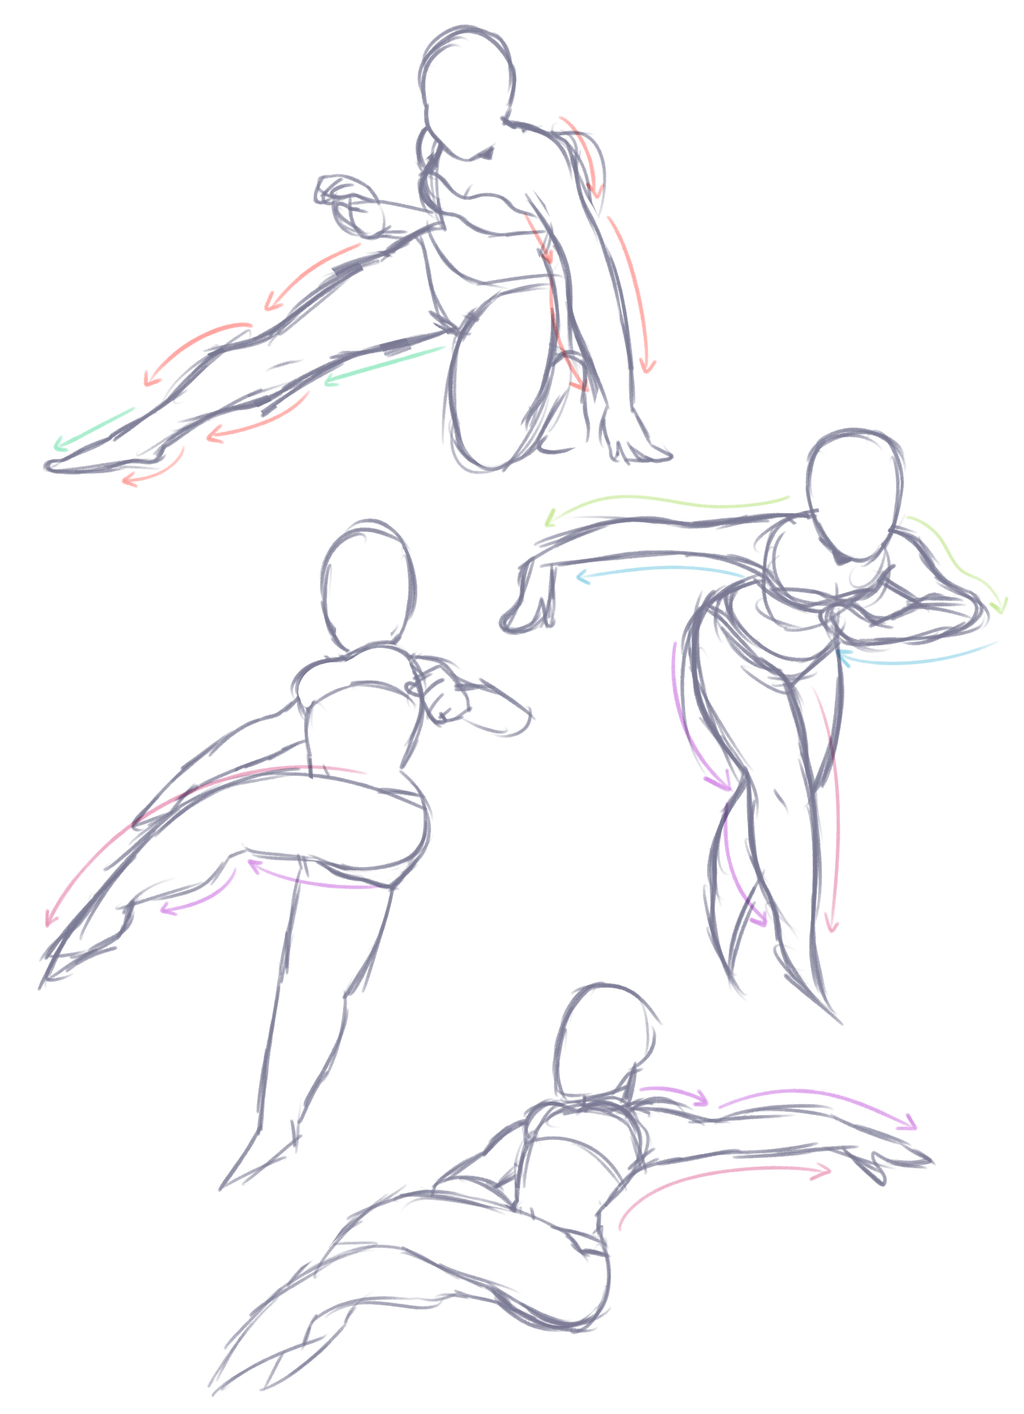 Figure drawings! #figuredrawings #gesture #humananatomy #linework  #gesturedrawing #doodle #sketches #drawing #art #dynamic #poses #gotto... |  Instagram